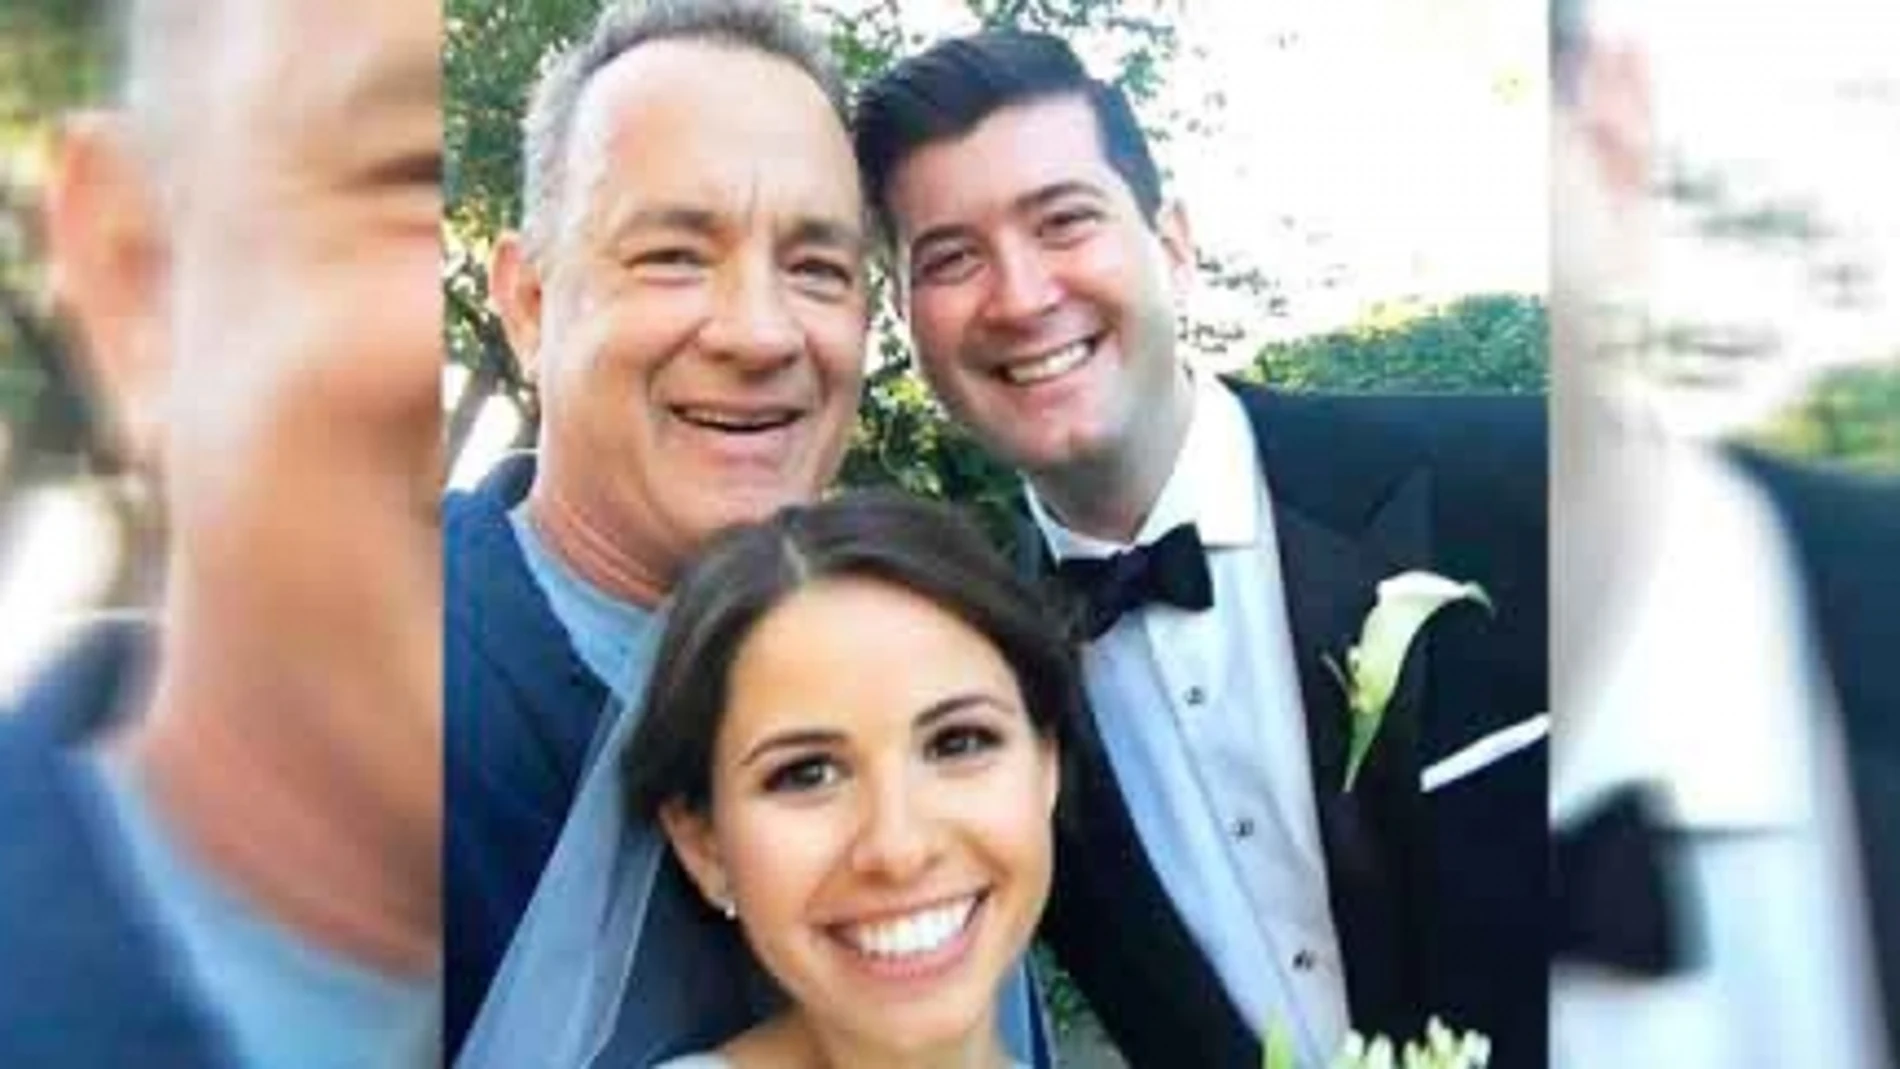 Tom Hanks sorprende a una pareja de recién casados en Central Park